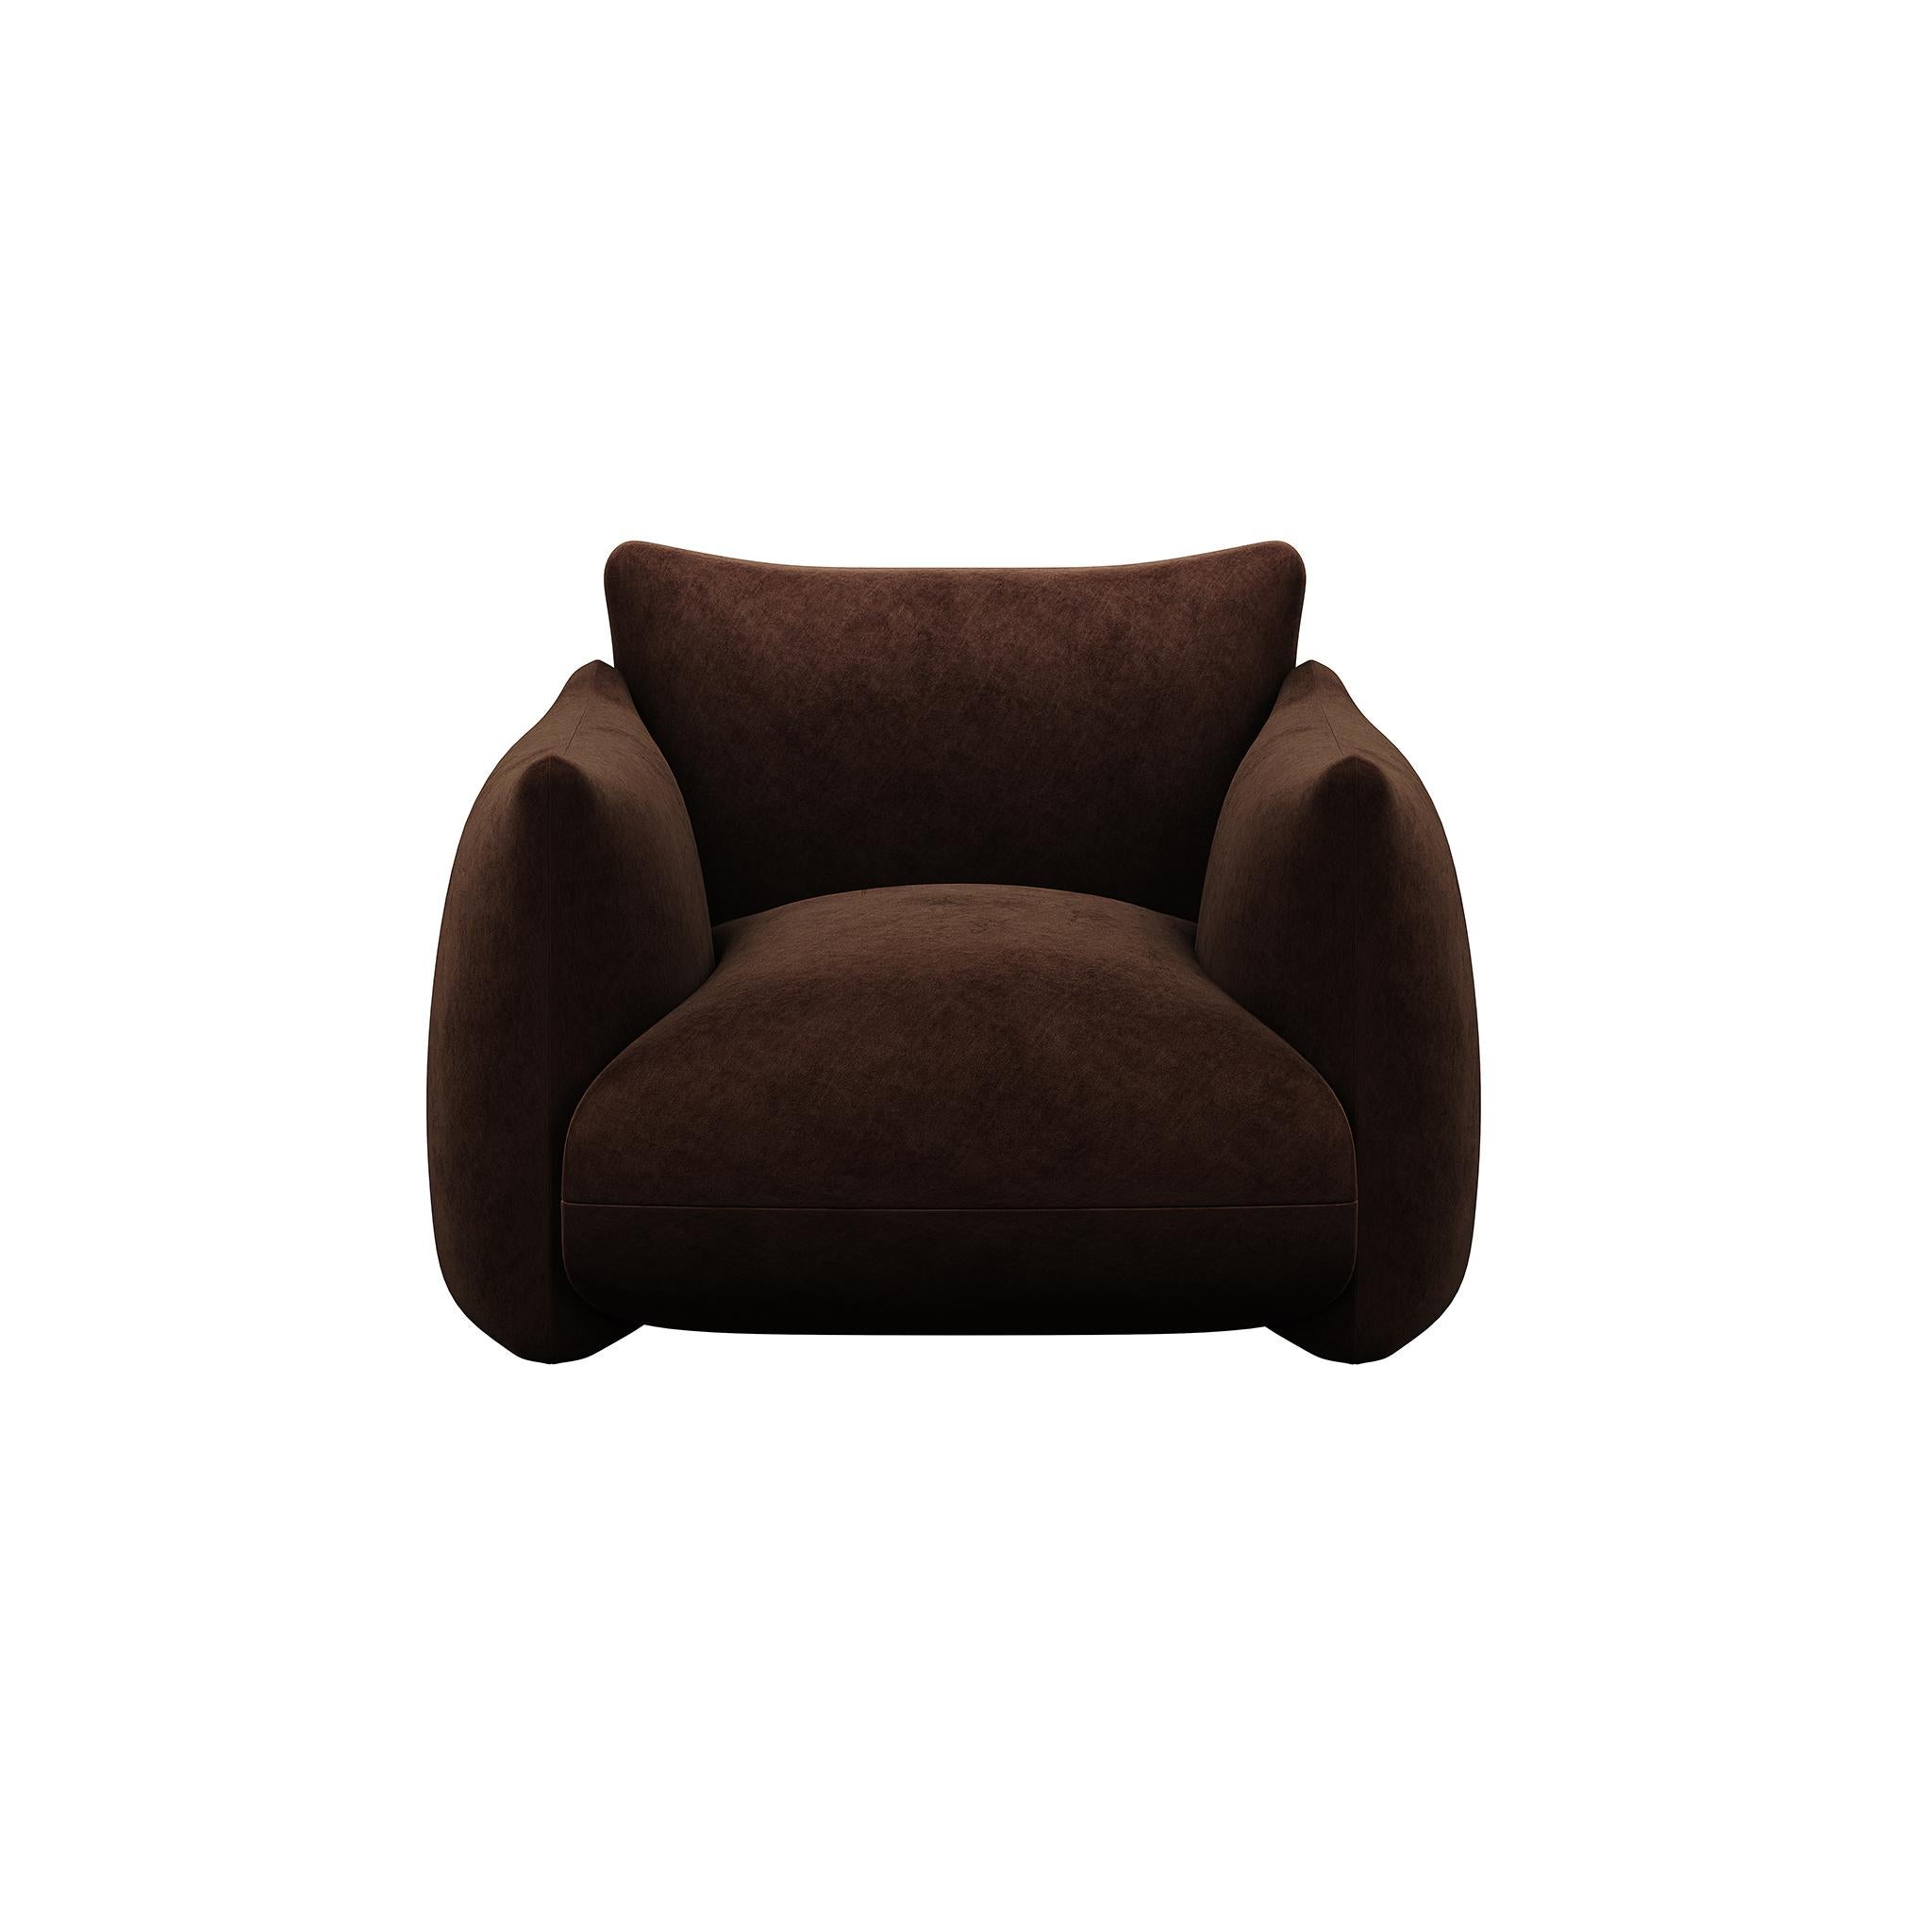 Voici l'incarnation du confort et du style - le fauteuil Full Upholstery en somptueux daim chocolat.
Ce fauteuil est une fusion harmonieuse entre un design luxueux et un confort irrésistible, ce qui en fait le complément parfait de tout intérieur